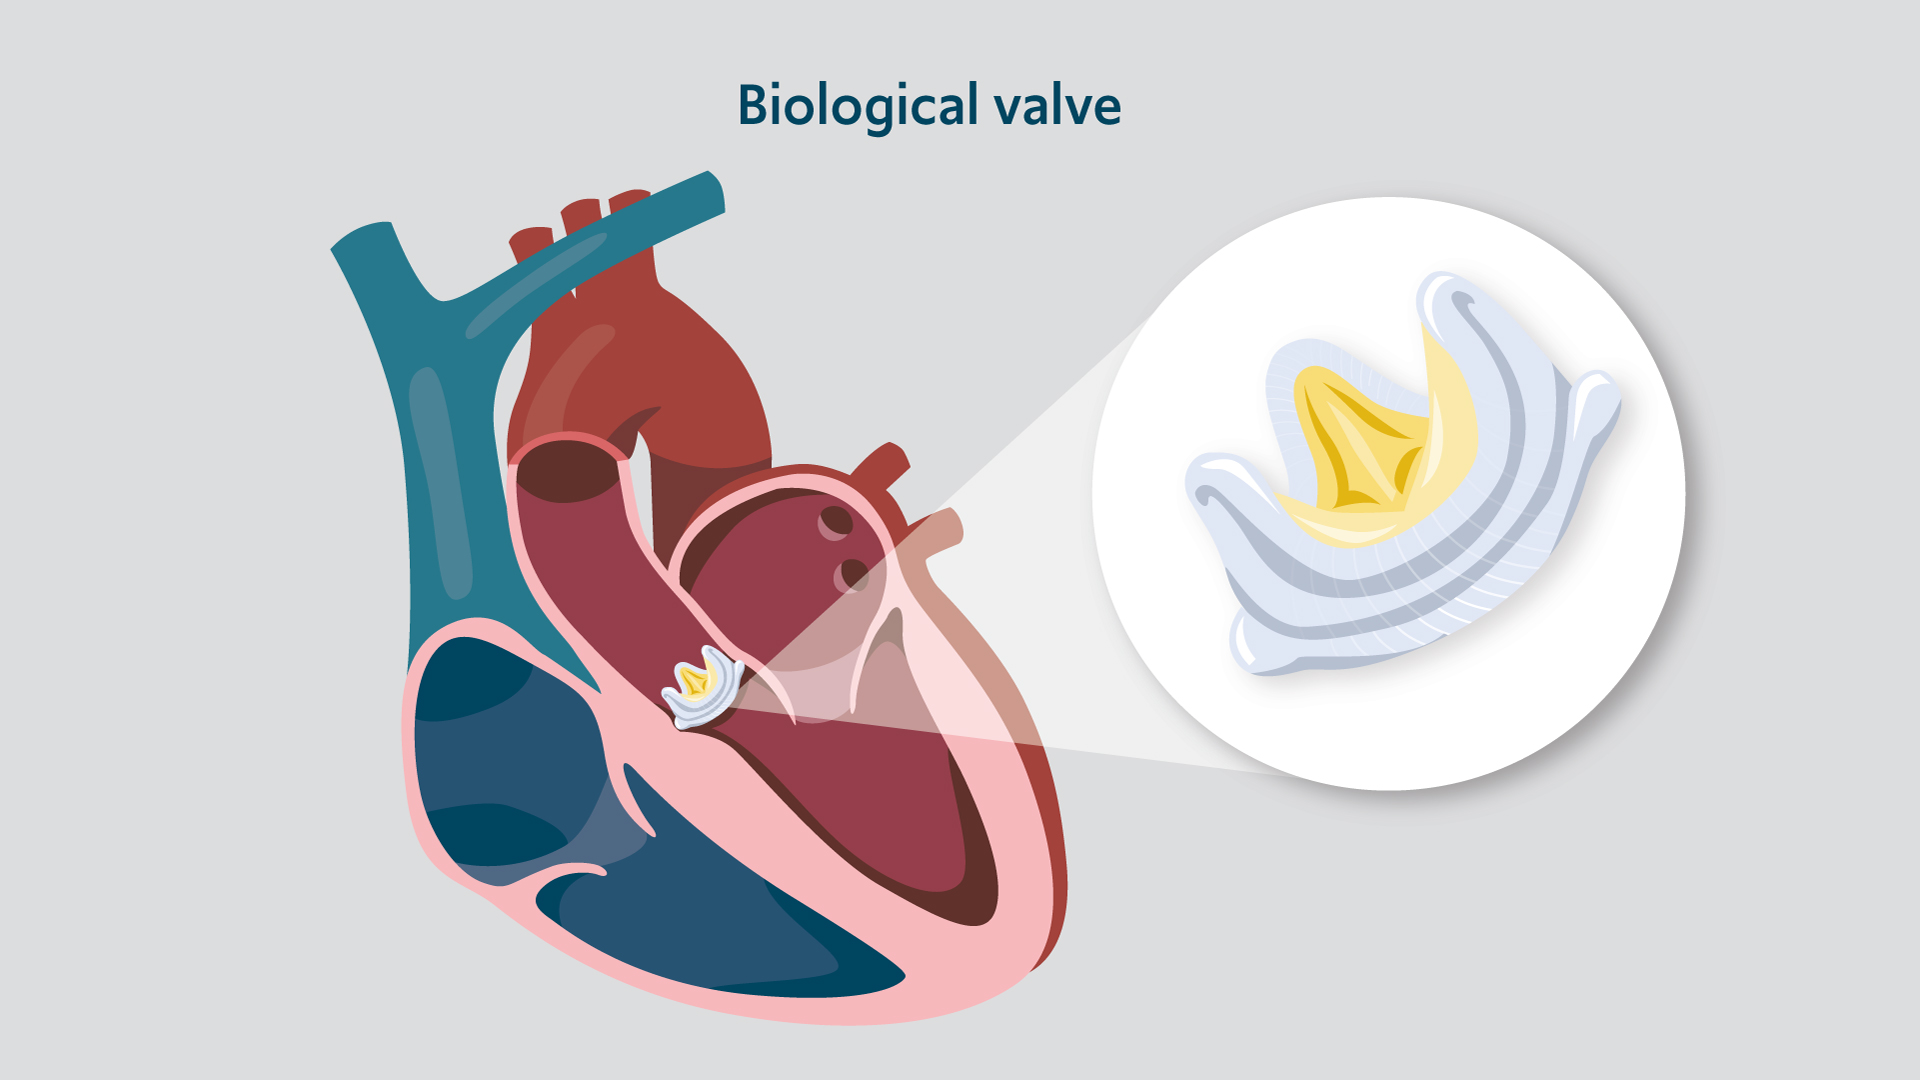 Illustration of a biological valve